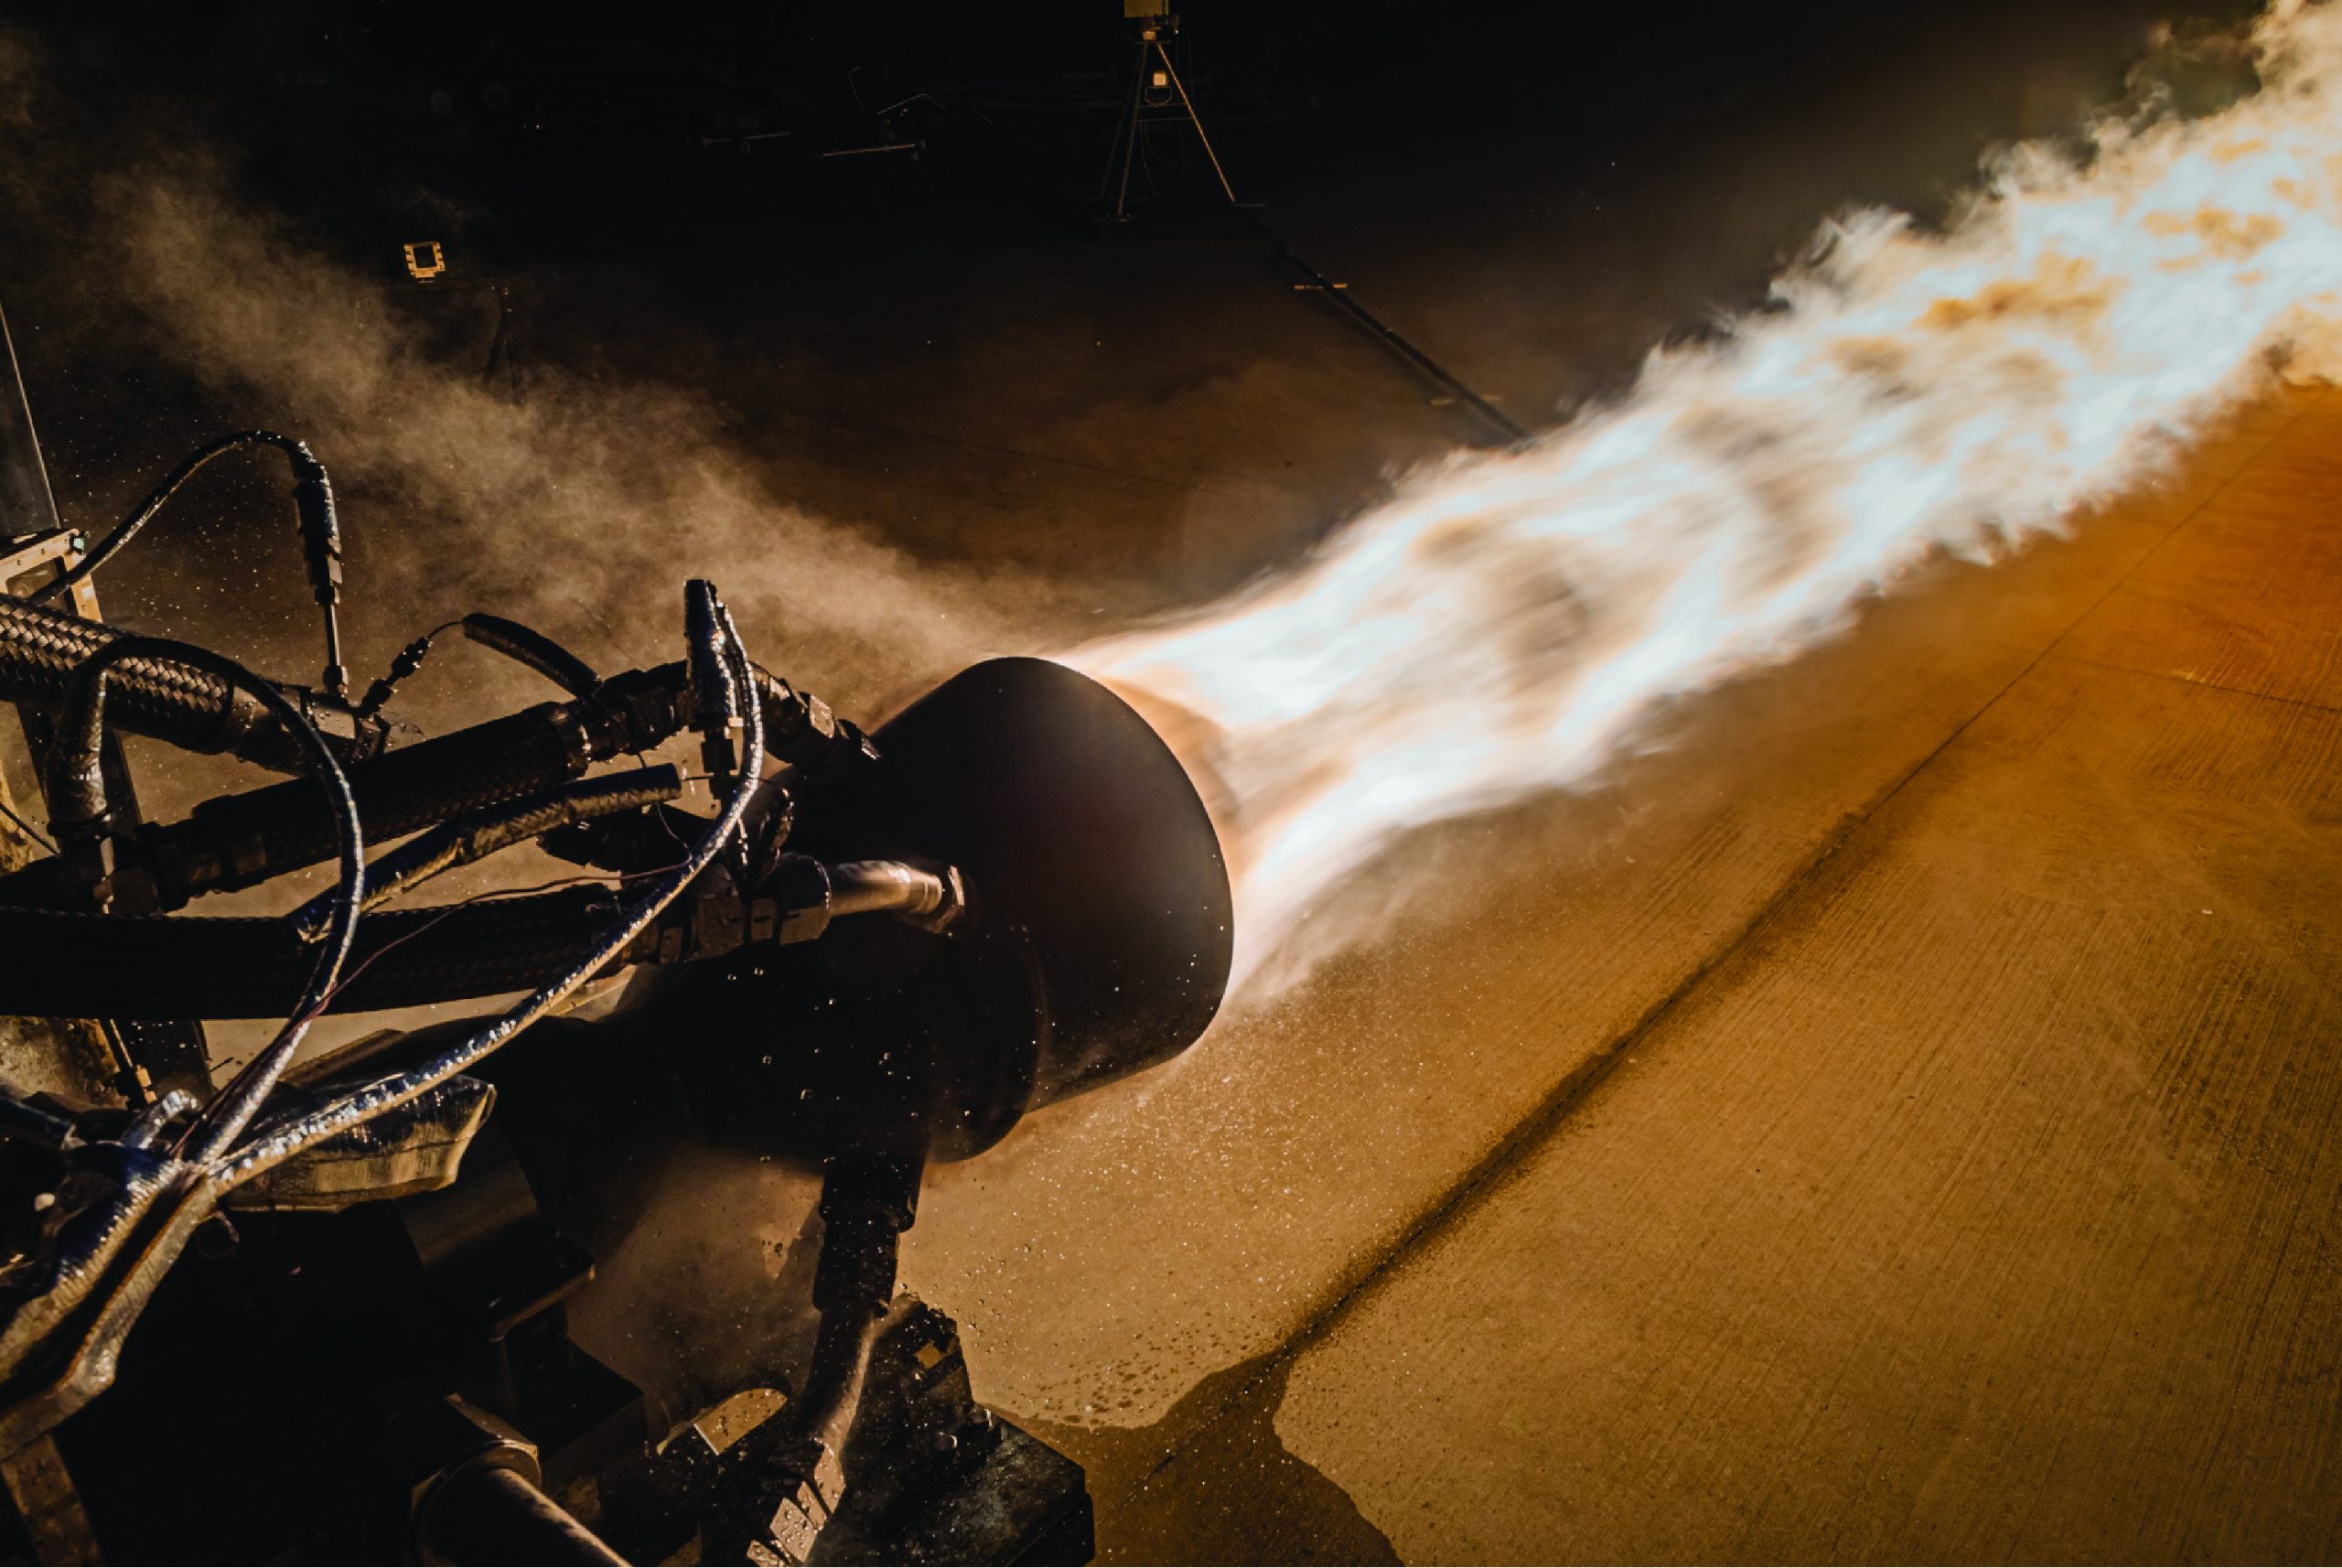 发射台在美国宇航局斯坦尼斯航天中心的E测试中心对其3d打印引擎-2火箭发动机进行了热火测试。摄影:Launcher/John Kraus Photography